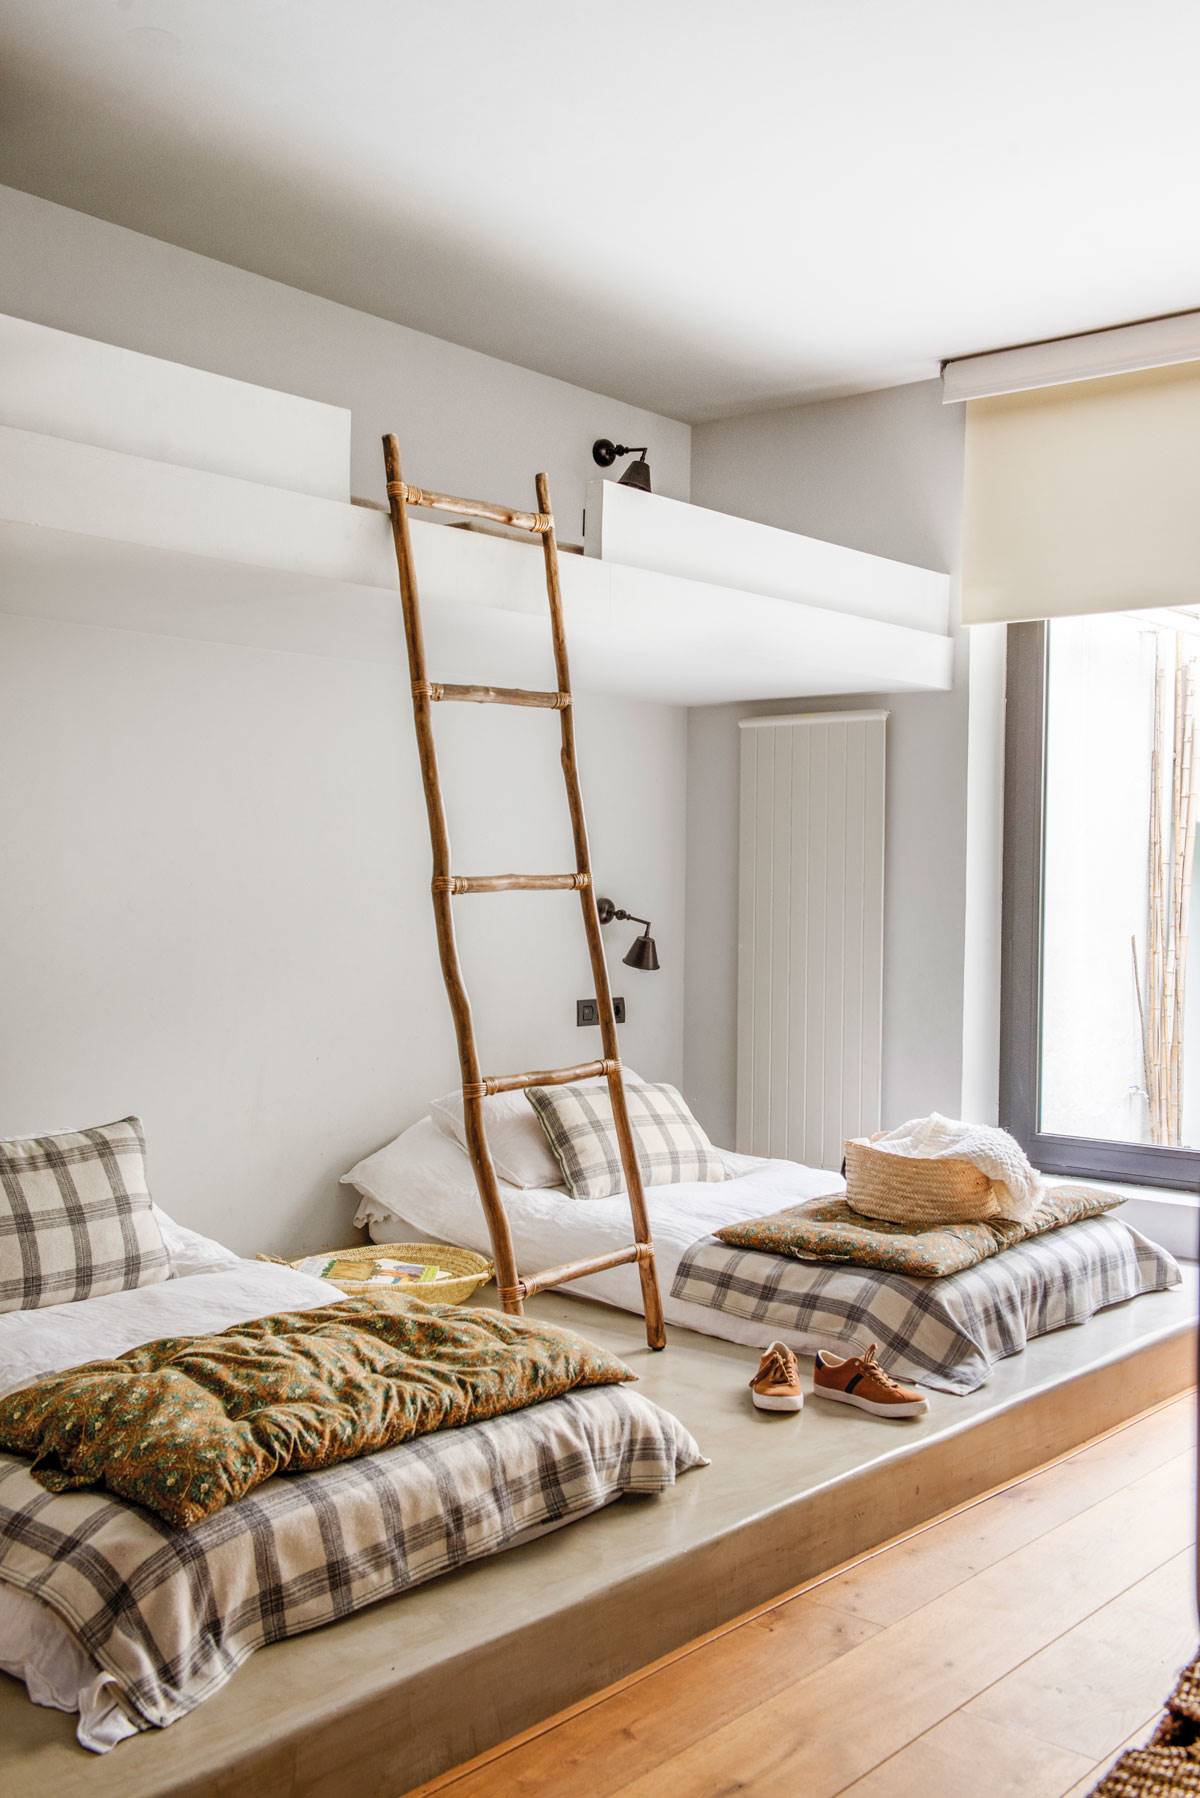 Dormitorio juvenil con camas tipo tatami, litera y escalera de madera-510472